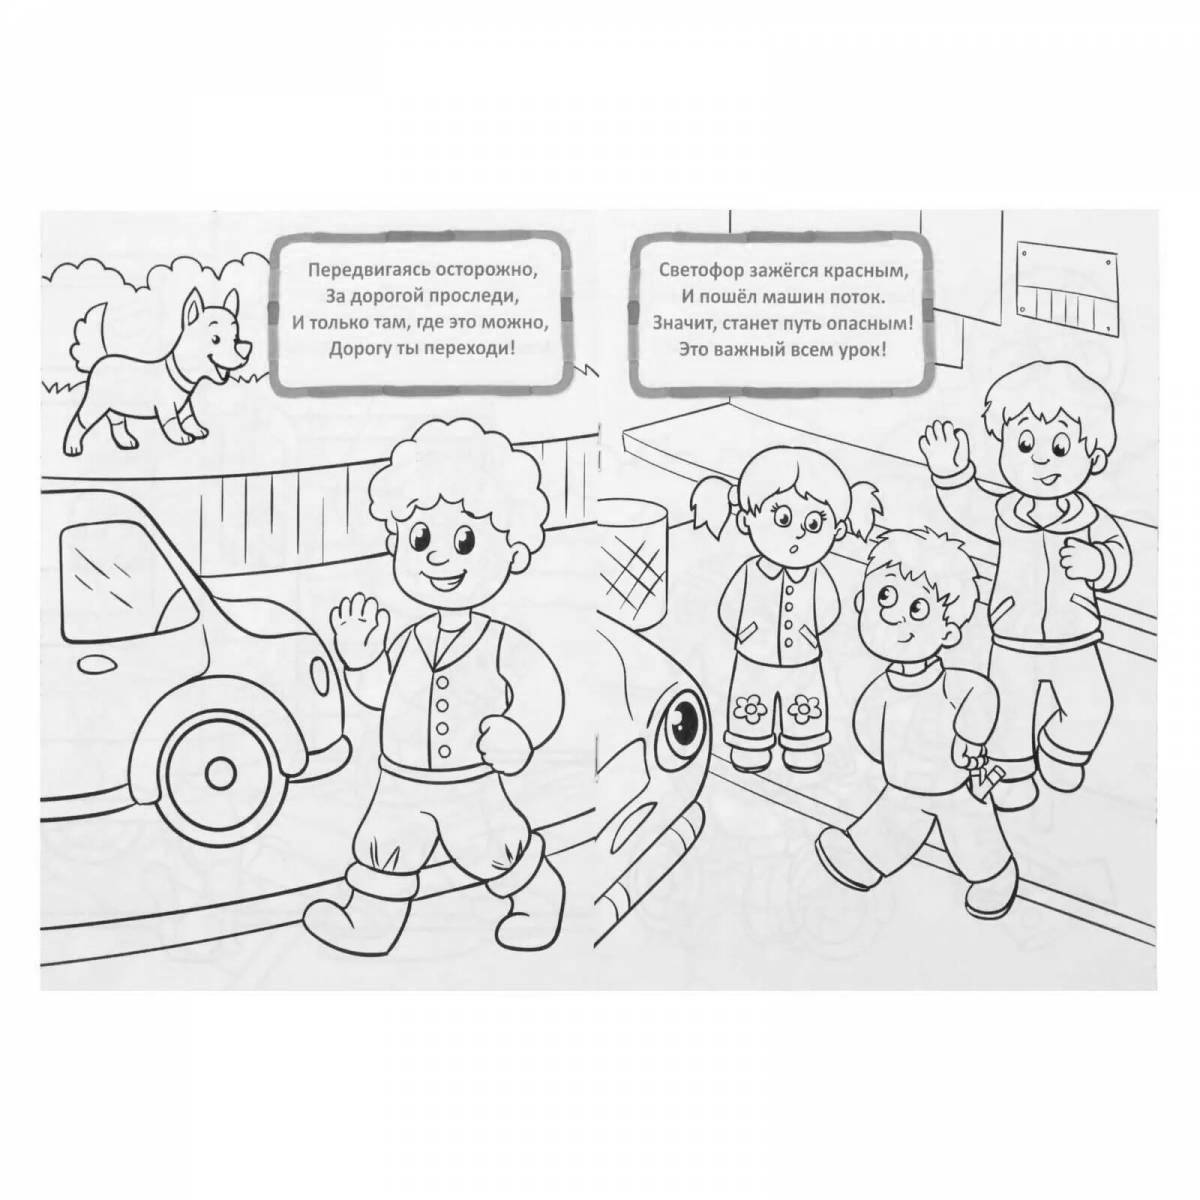 Inspiring traffic rules for schoolchildren